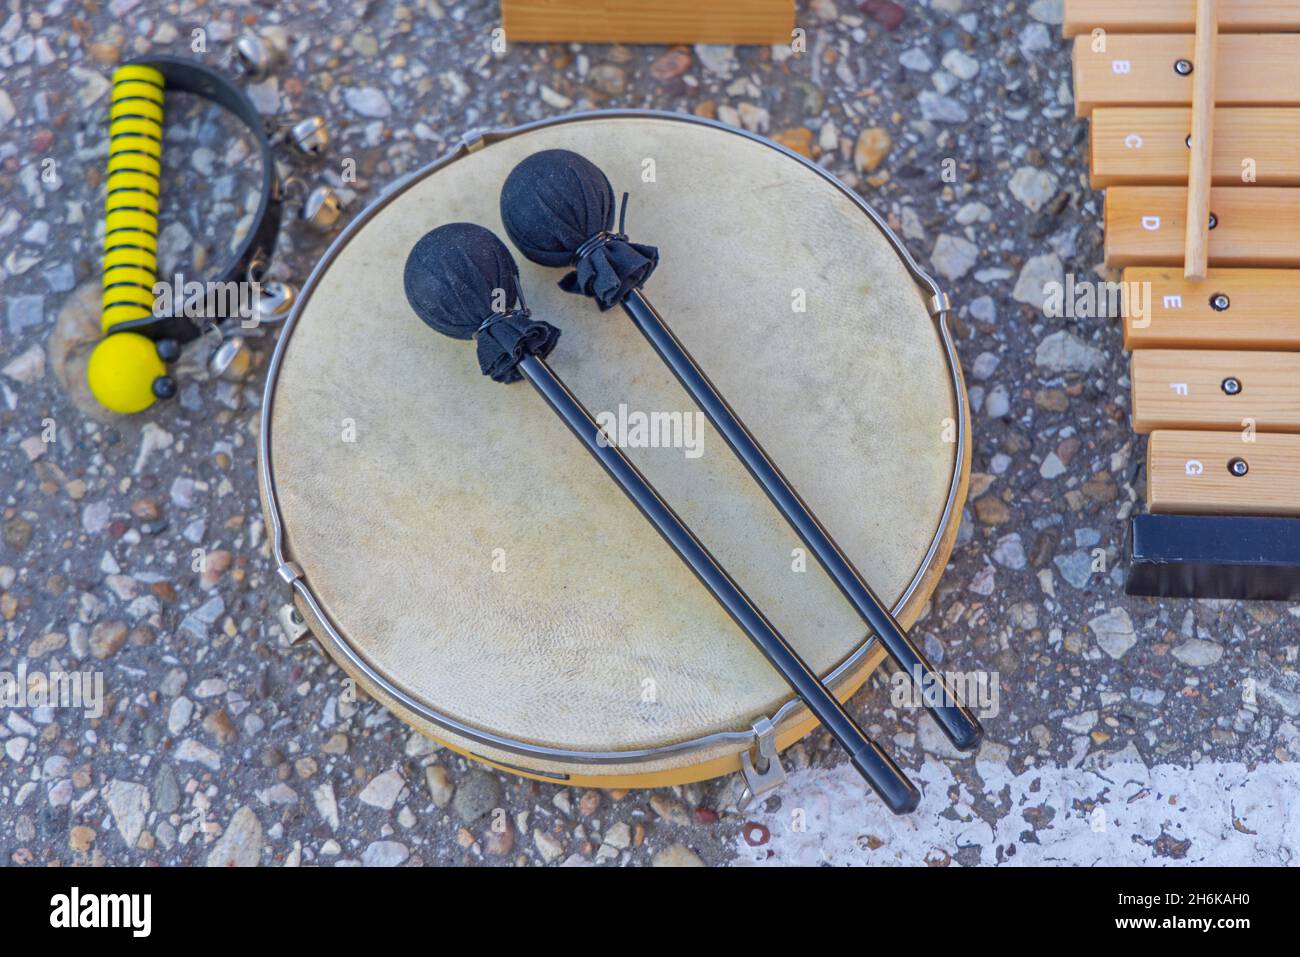 Paukenschlägel Trommel Musikinstrumente auf dem Flohmarkt Stockfoto